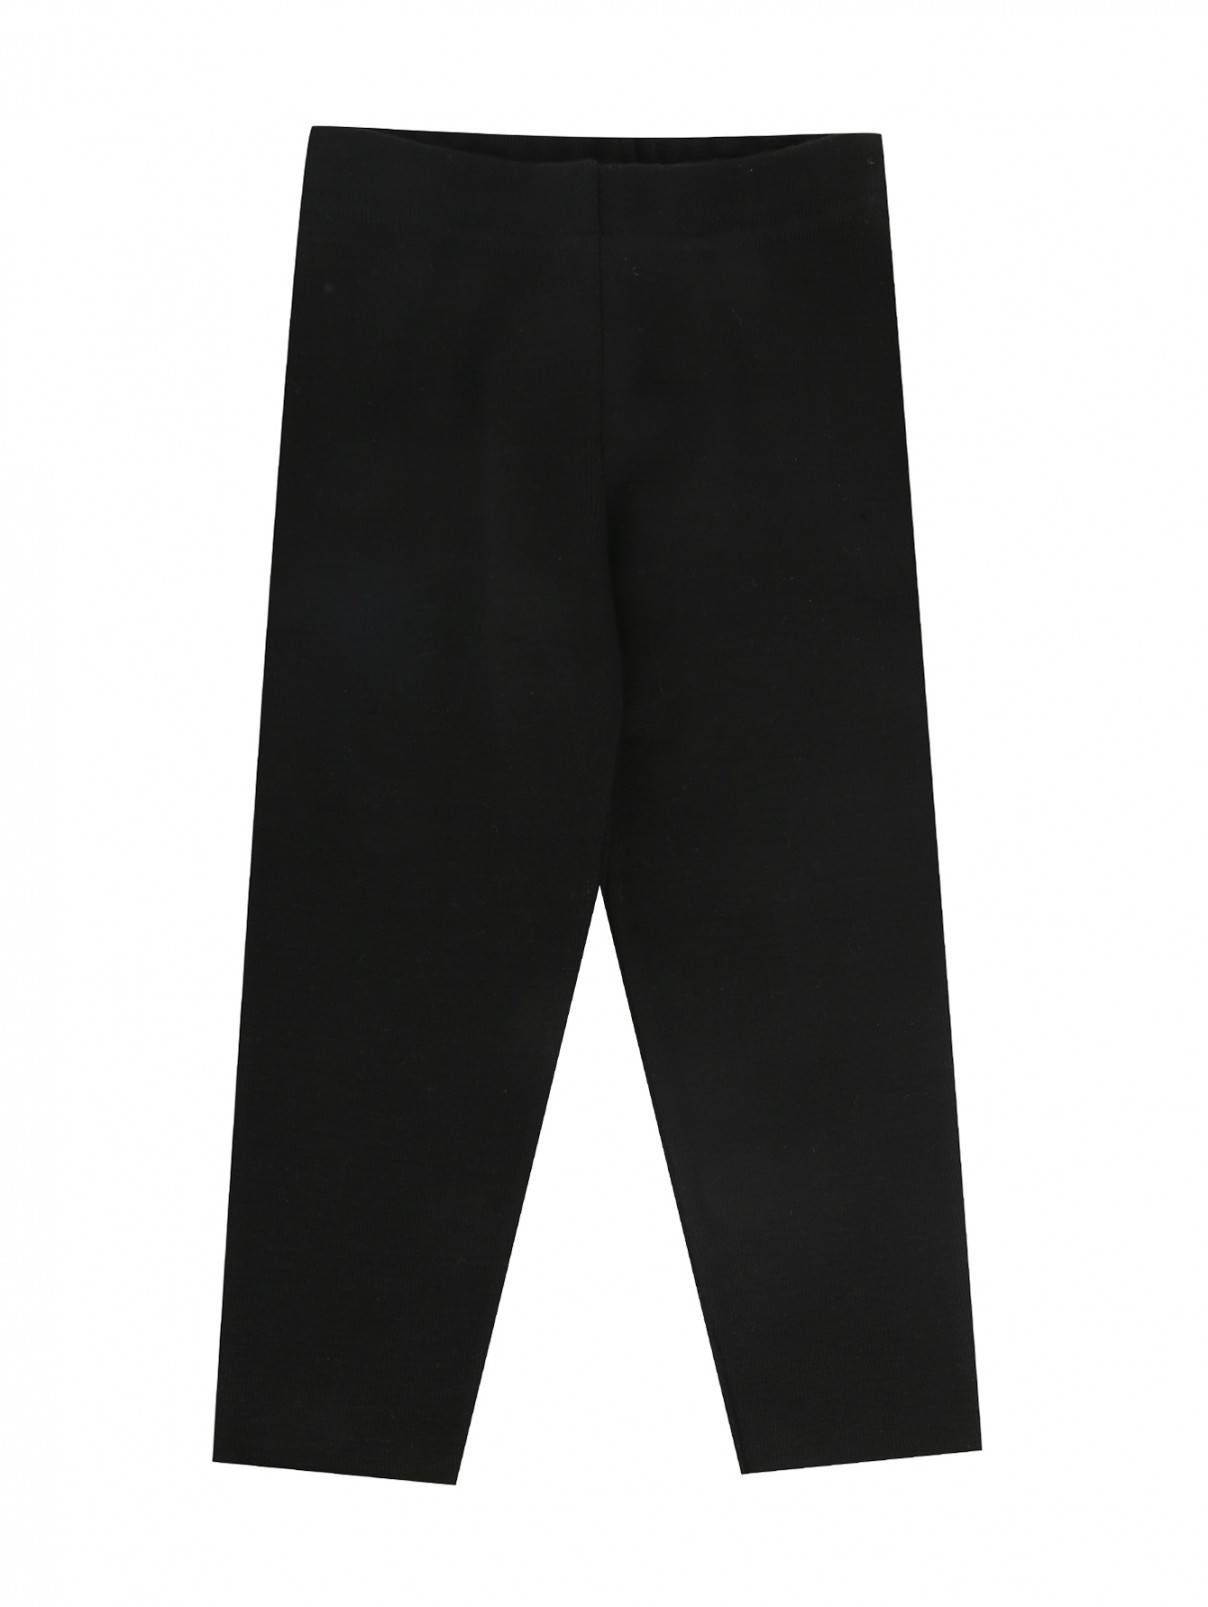 Трикотажные брюки на резинке Embe  –  Общий вид  – Цвет:  Черный